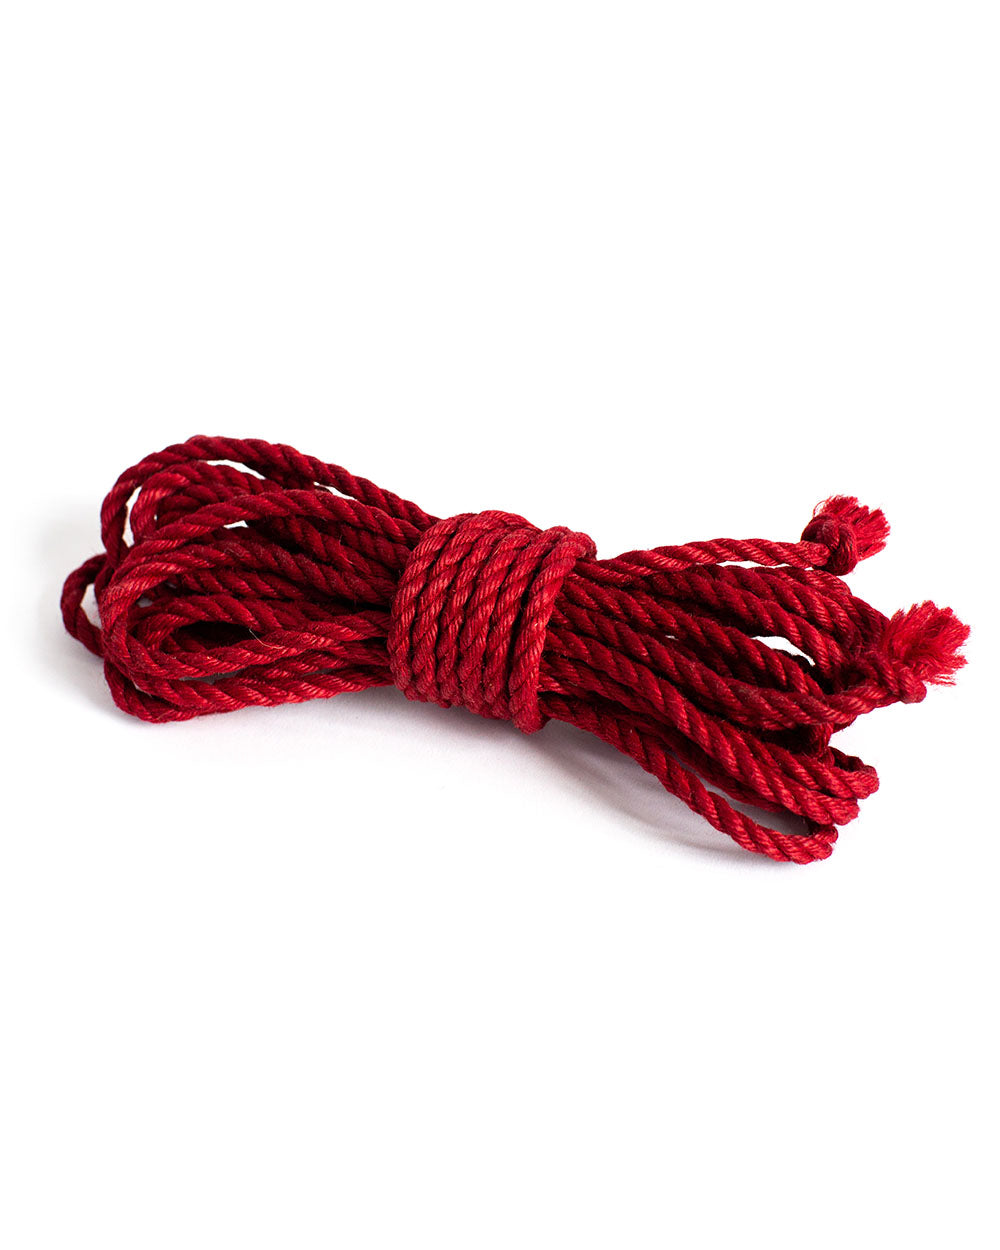 Anoeses Shibari rope – ANOESES